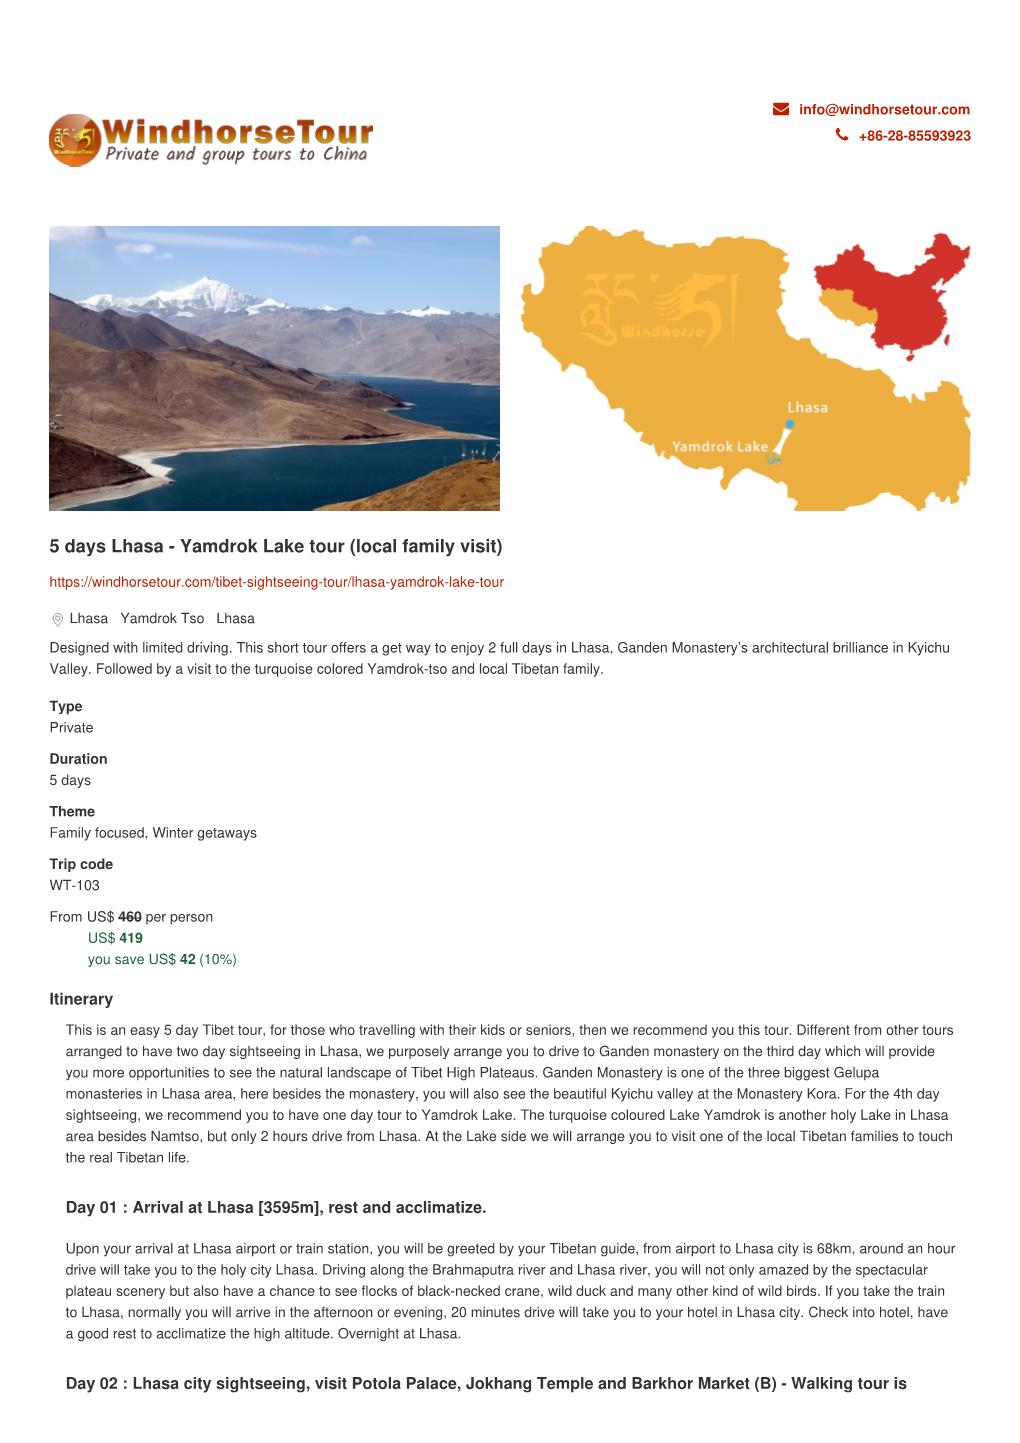 5 Days Lhasa - Yamdrok Lake Tour (Local Family Visit)